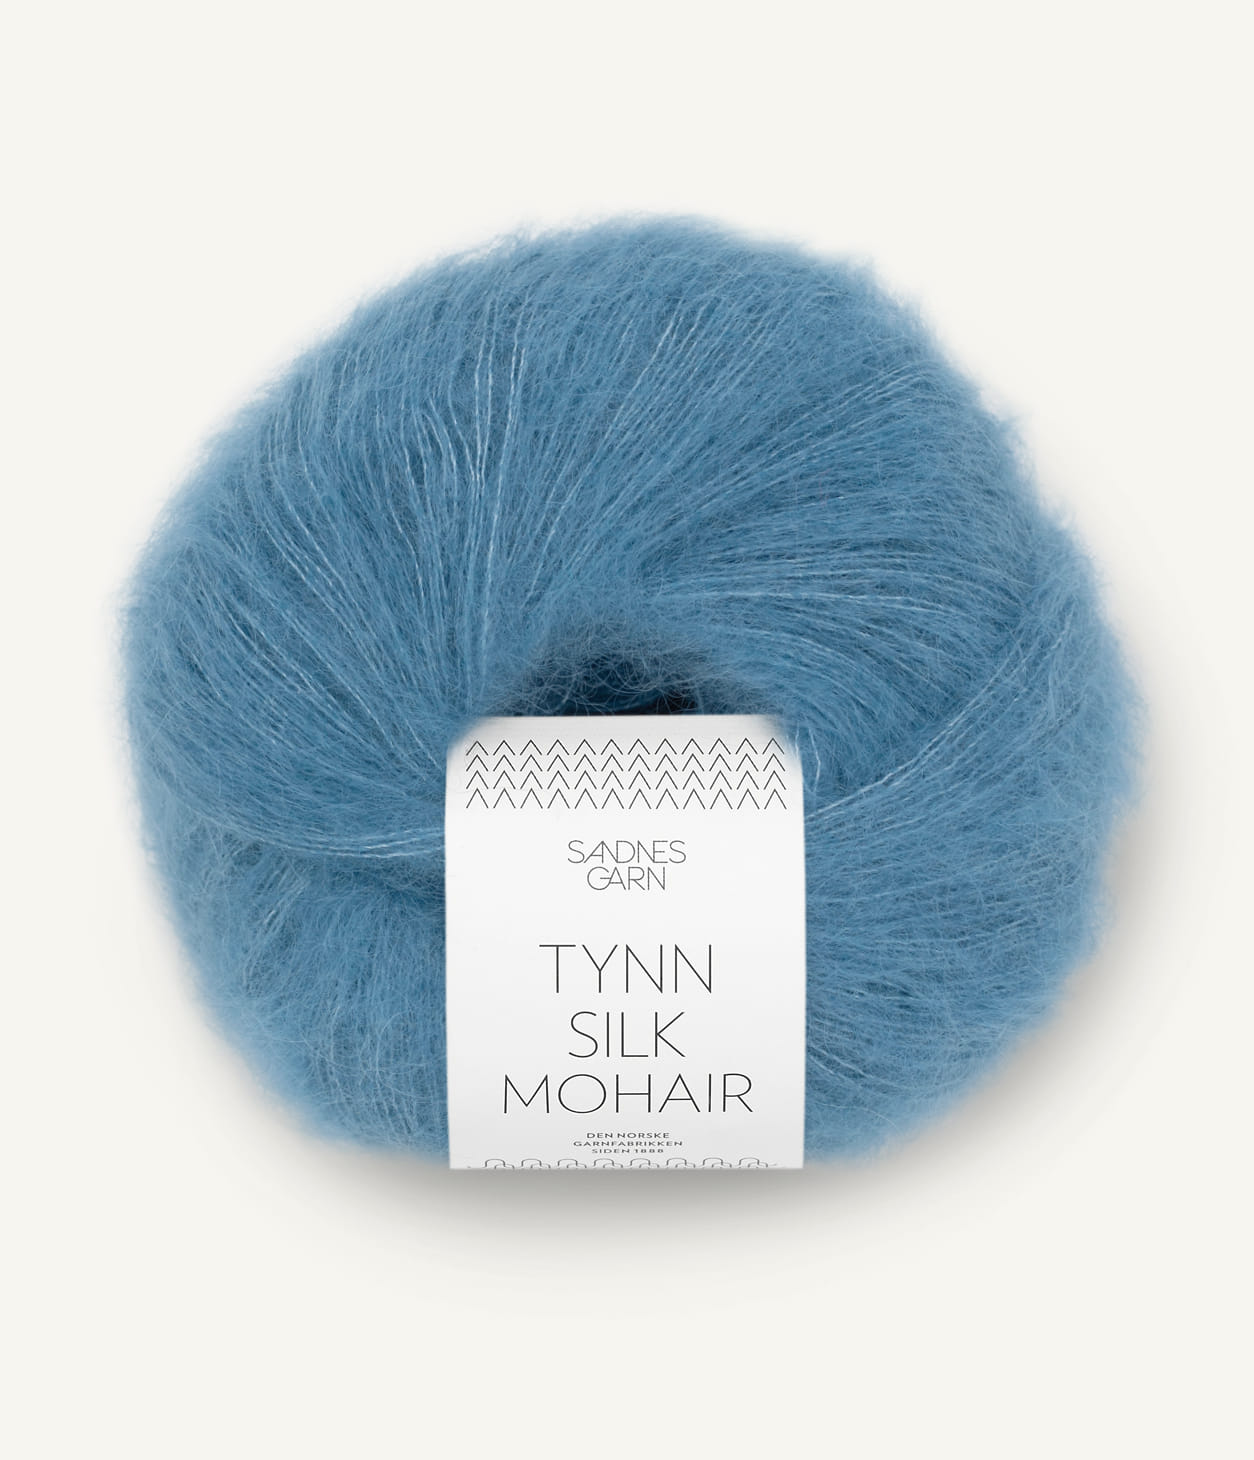 Kuvassa on Sandnes Garn Tynn Silk Mohair -lanka (yarn) värissä Mørk Himmelblå. 